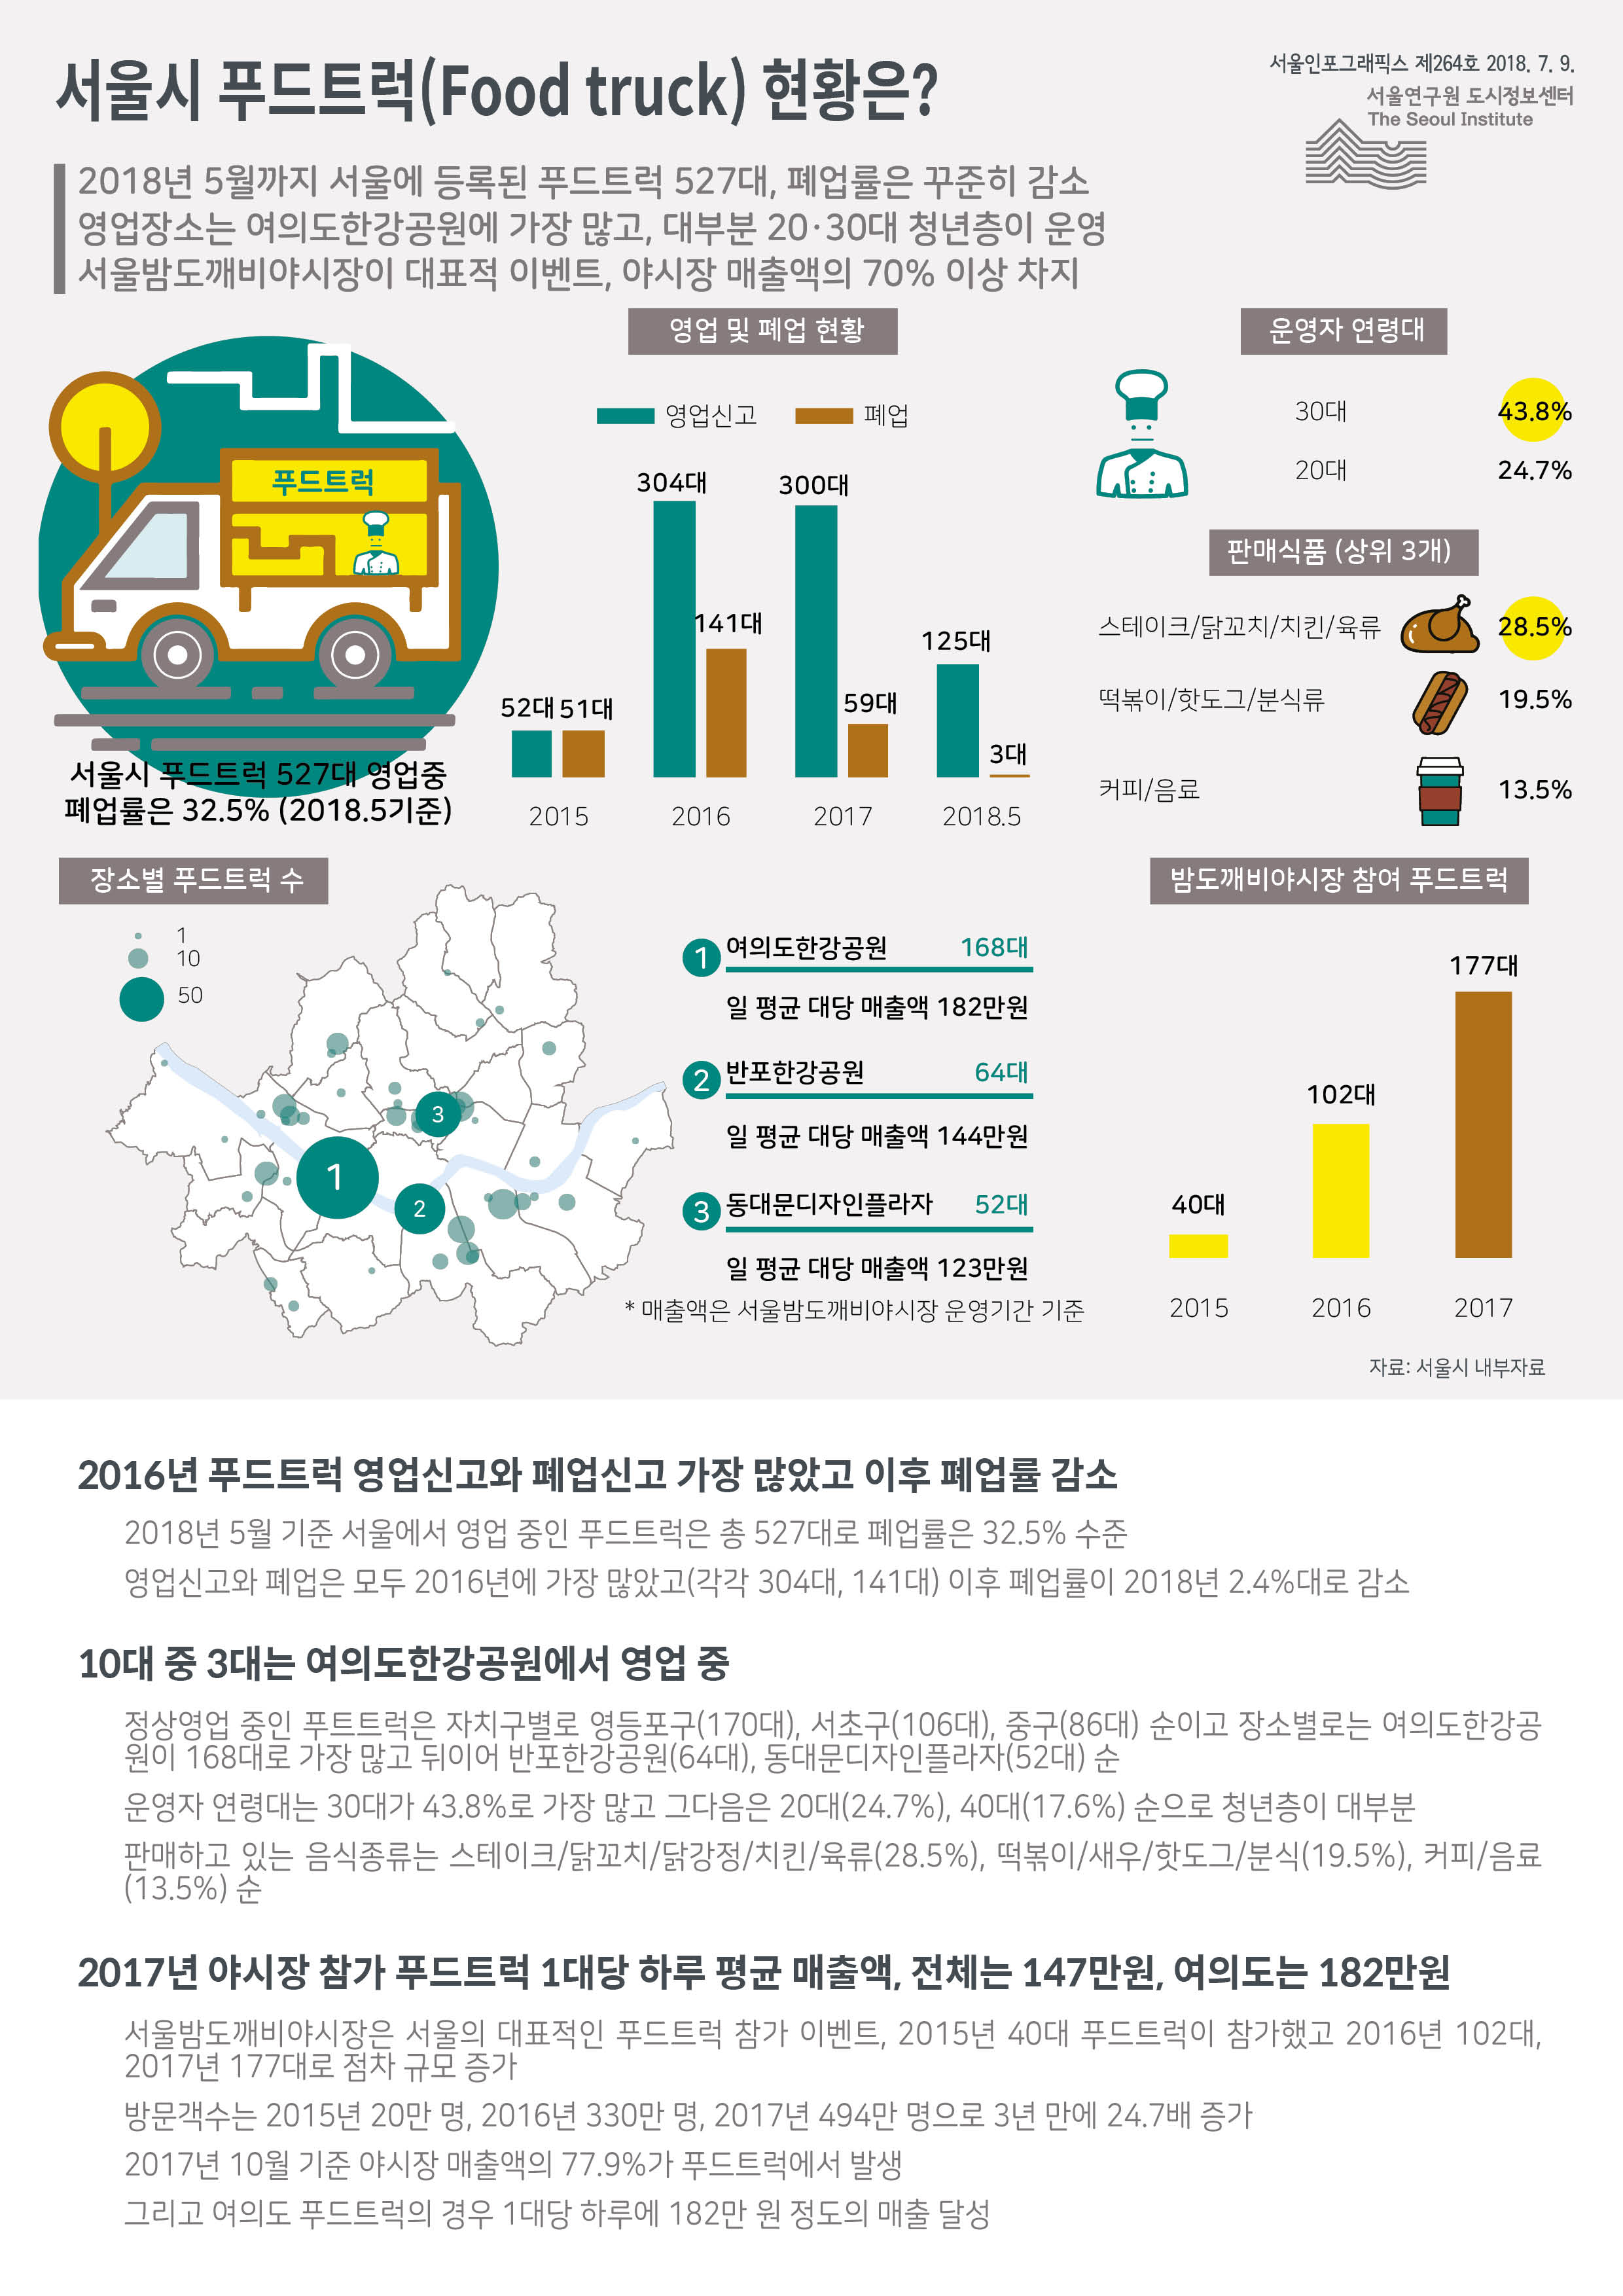 2018년 5월까지 서울에 등록된 푸드트럭 527대, 폐업률은 꾸준히 감소. 영업장소는 여의도한강공원에 가장 많고, 대부분 20·30대 청년층이 운영. 서울밤도깨비야시장이 대표적 이벤트, 야시장 매출액의 70% 이상 차지함으로 정리 될 수 있습니다. 인포그래픽으로 제공되는 그래픽은 하단에 표로 자세히 제공됩니다.